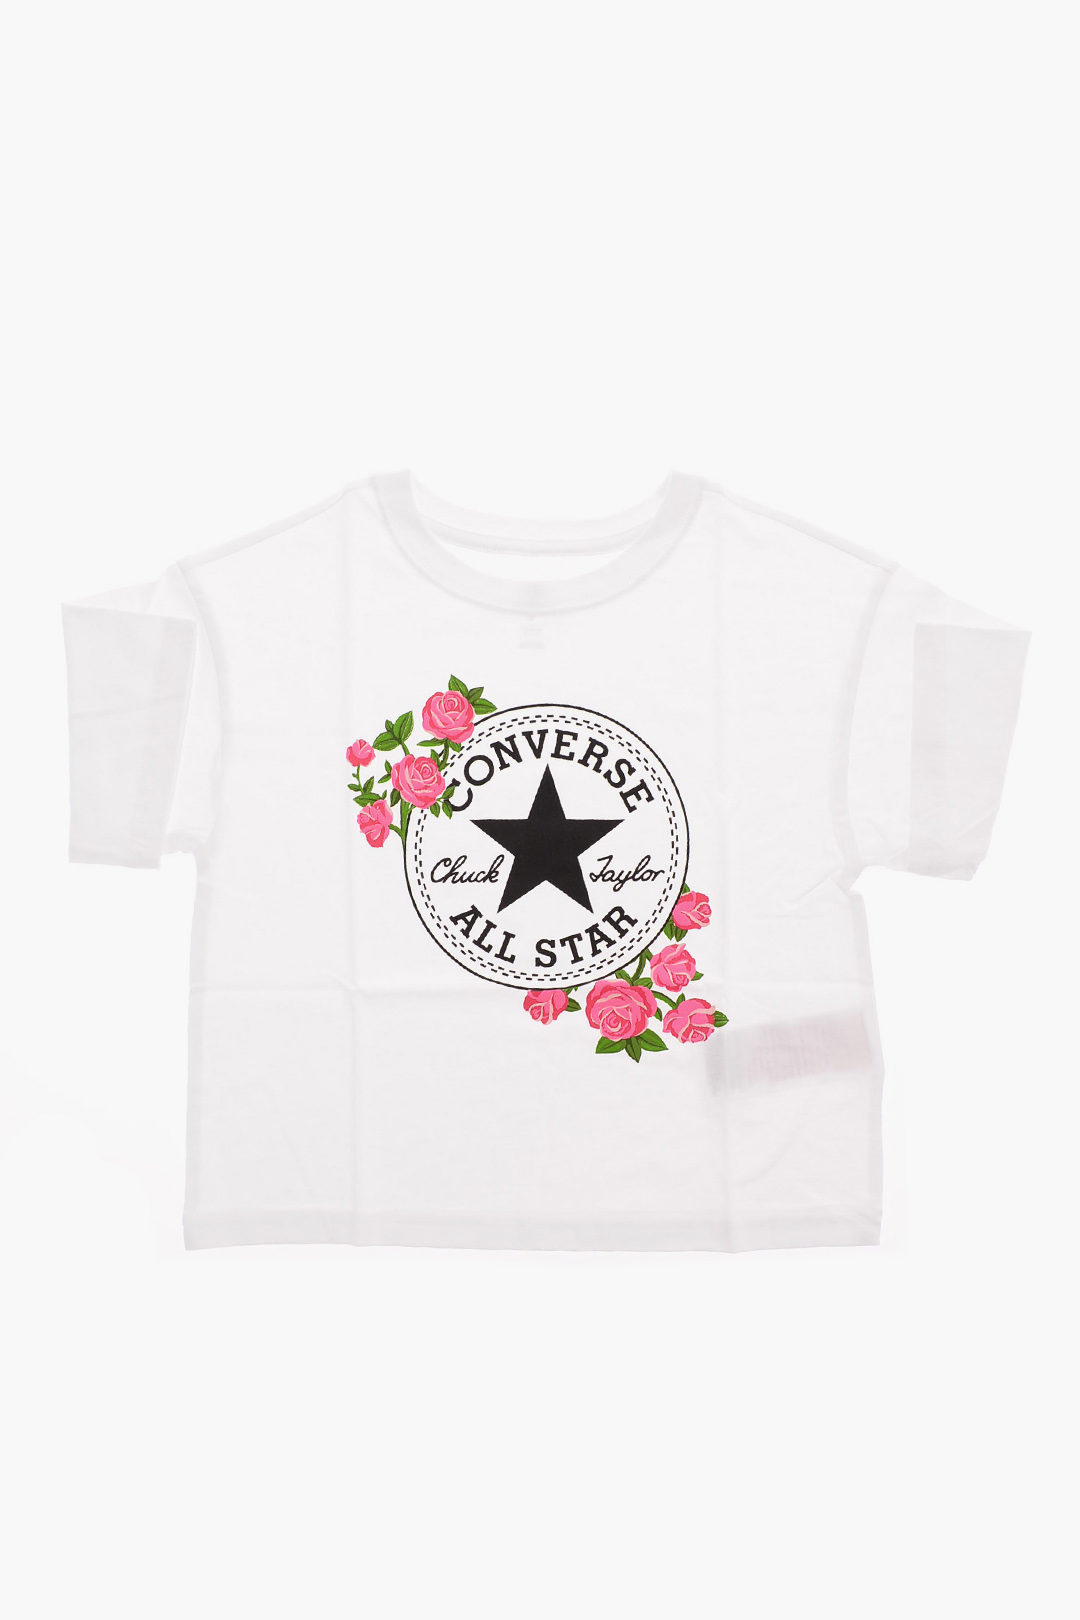 rysten Settlers Gud Converse KIDS ALL STAR Jersey T-shirt girls - Glamood Outlet